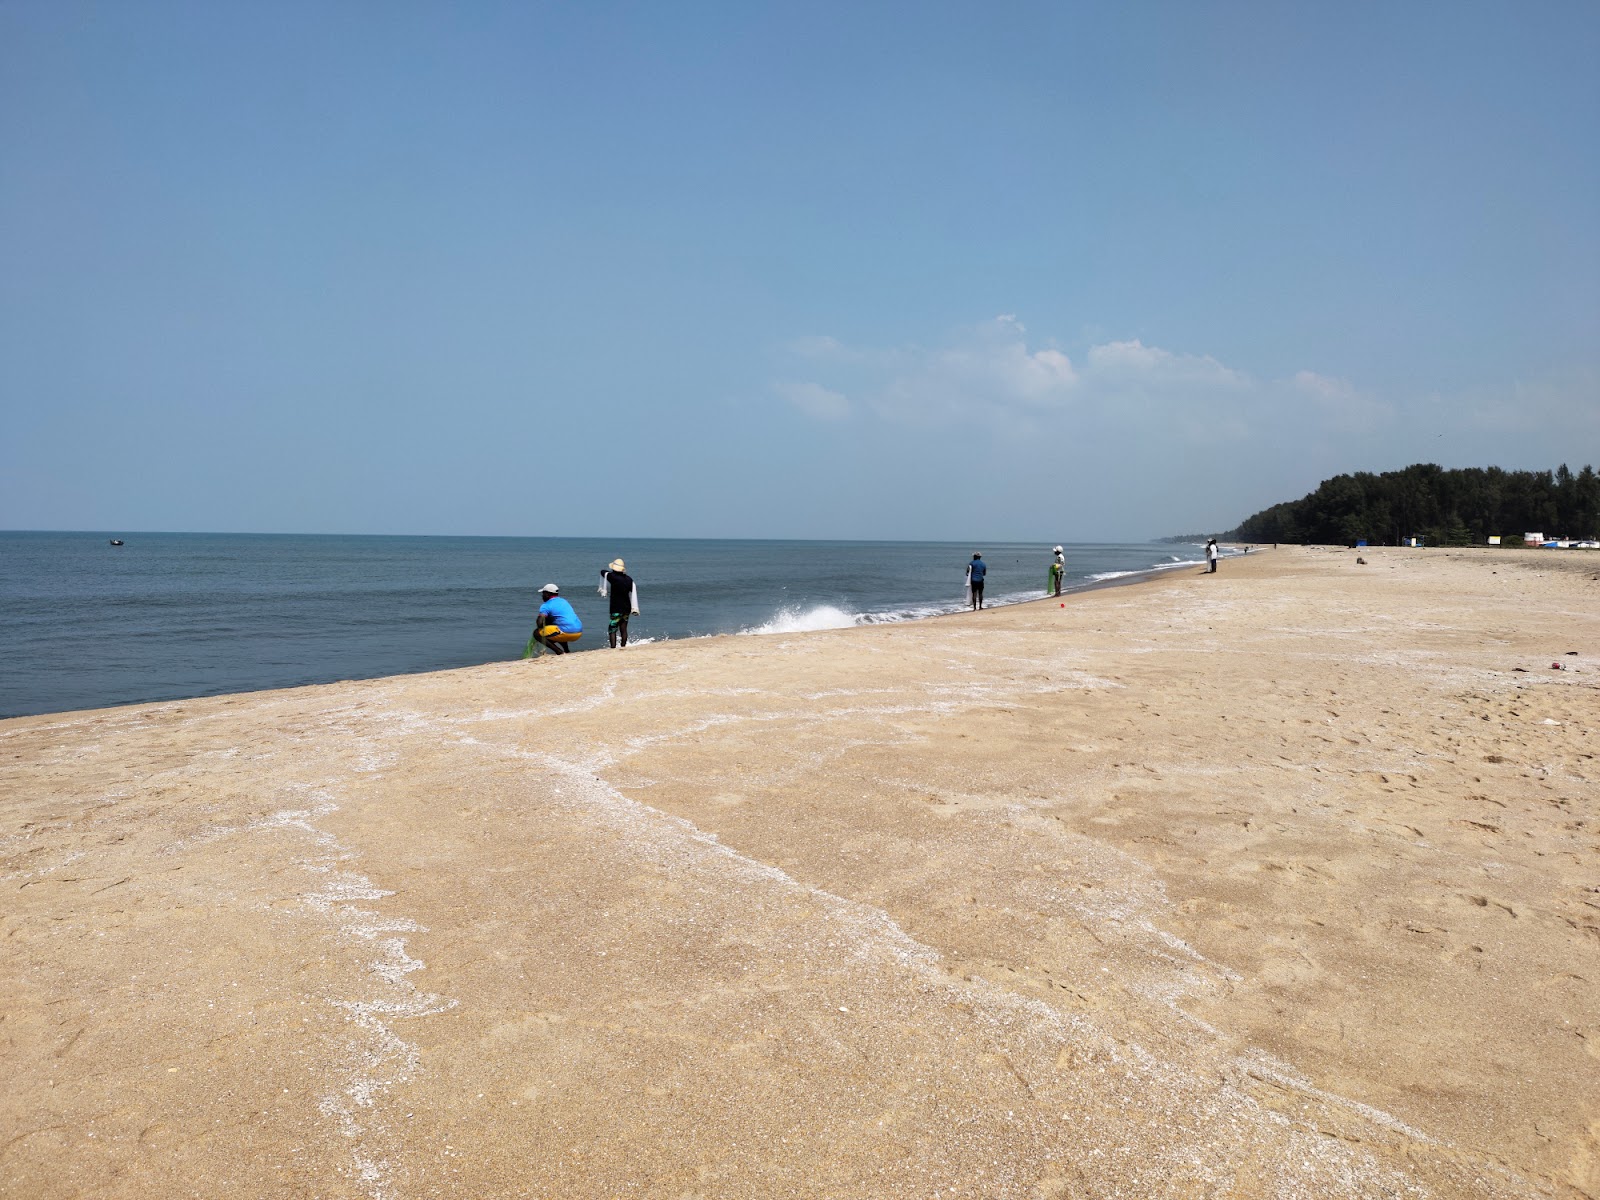 Munnakal Beach'in fotoğrafı parlak kum yüzey ile